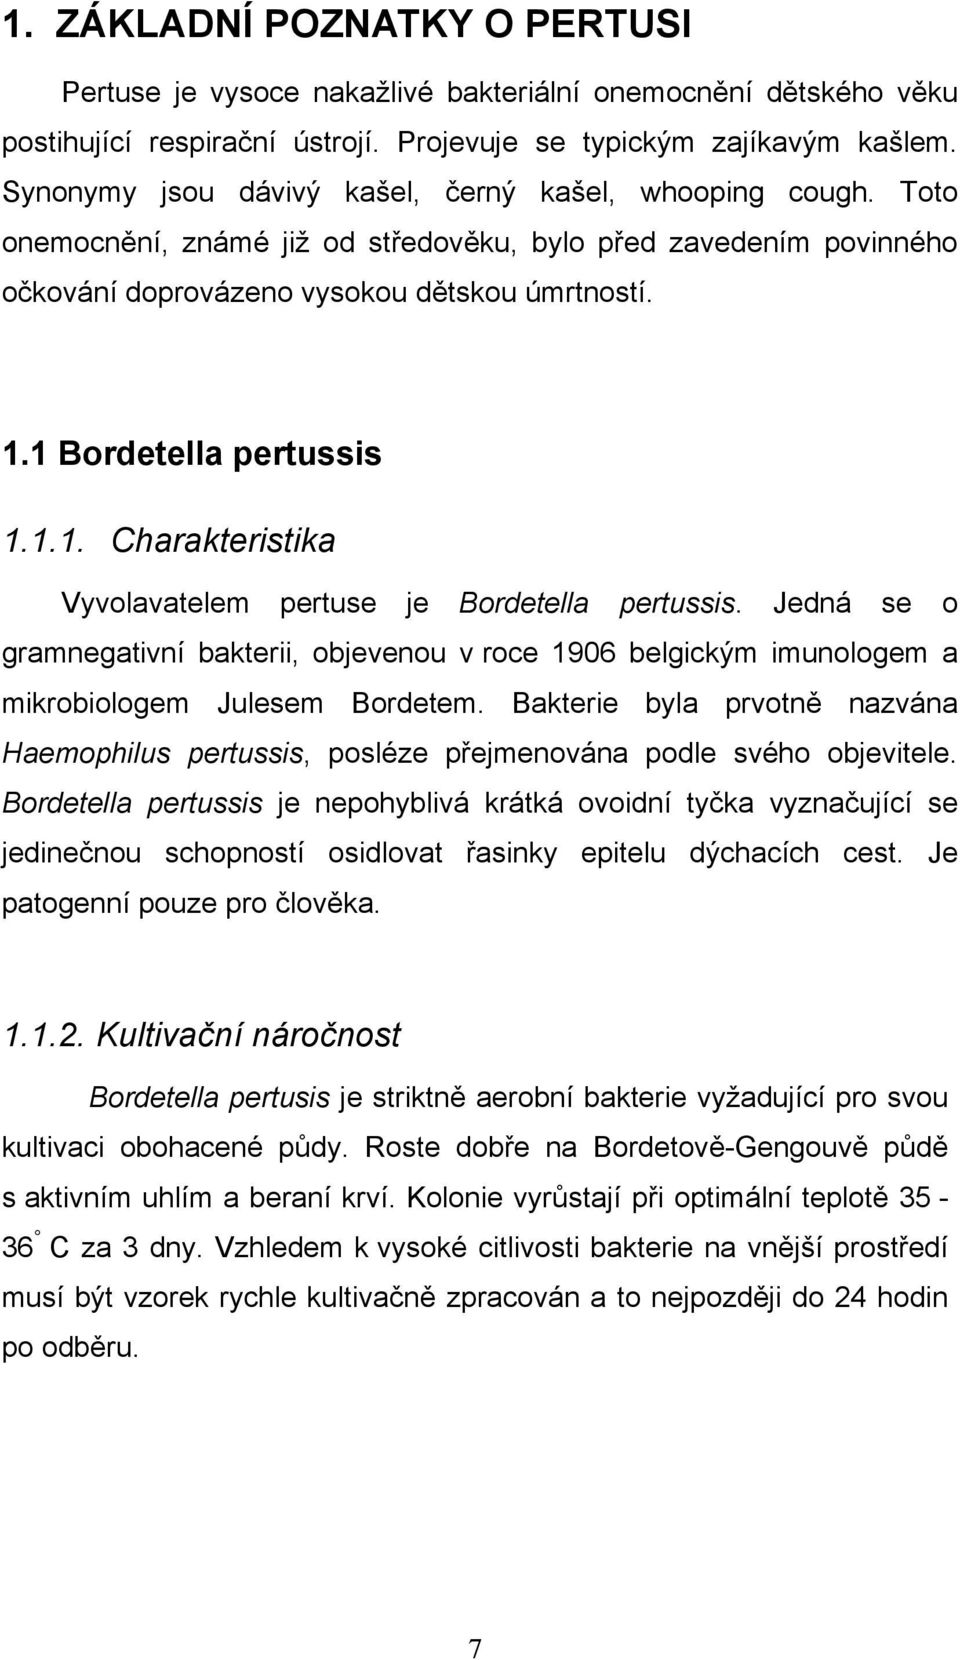 1 Bordetella pertussis 1.1.1. Charakteristika Vyvolavatelem pertuse je Bordetella pertussis.